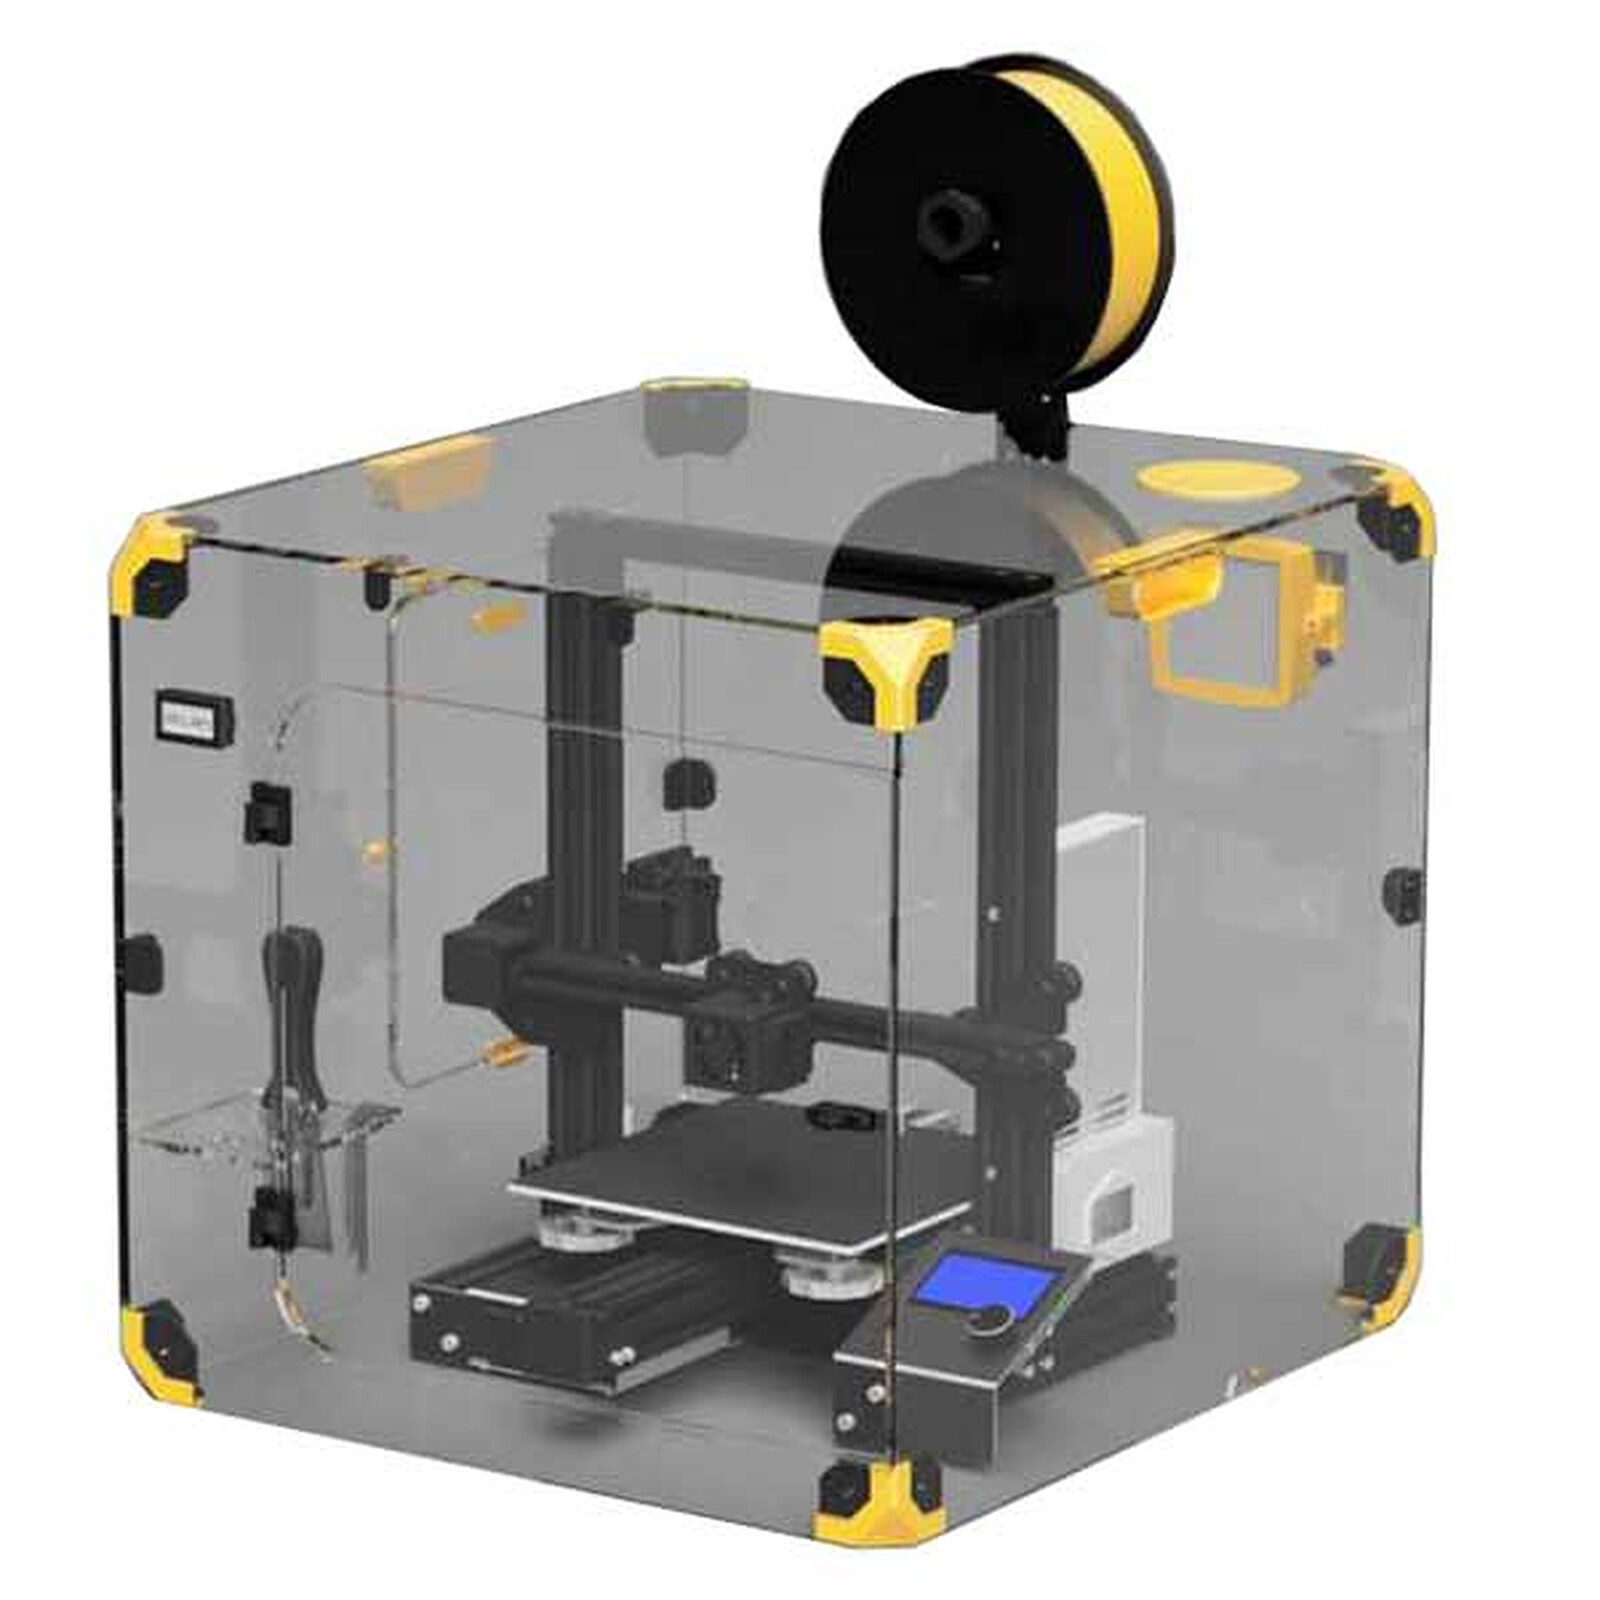 Creality Boîte sèche à filaments - Accessoires imprimante 3D - Garantie 3  ans LDLC